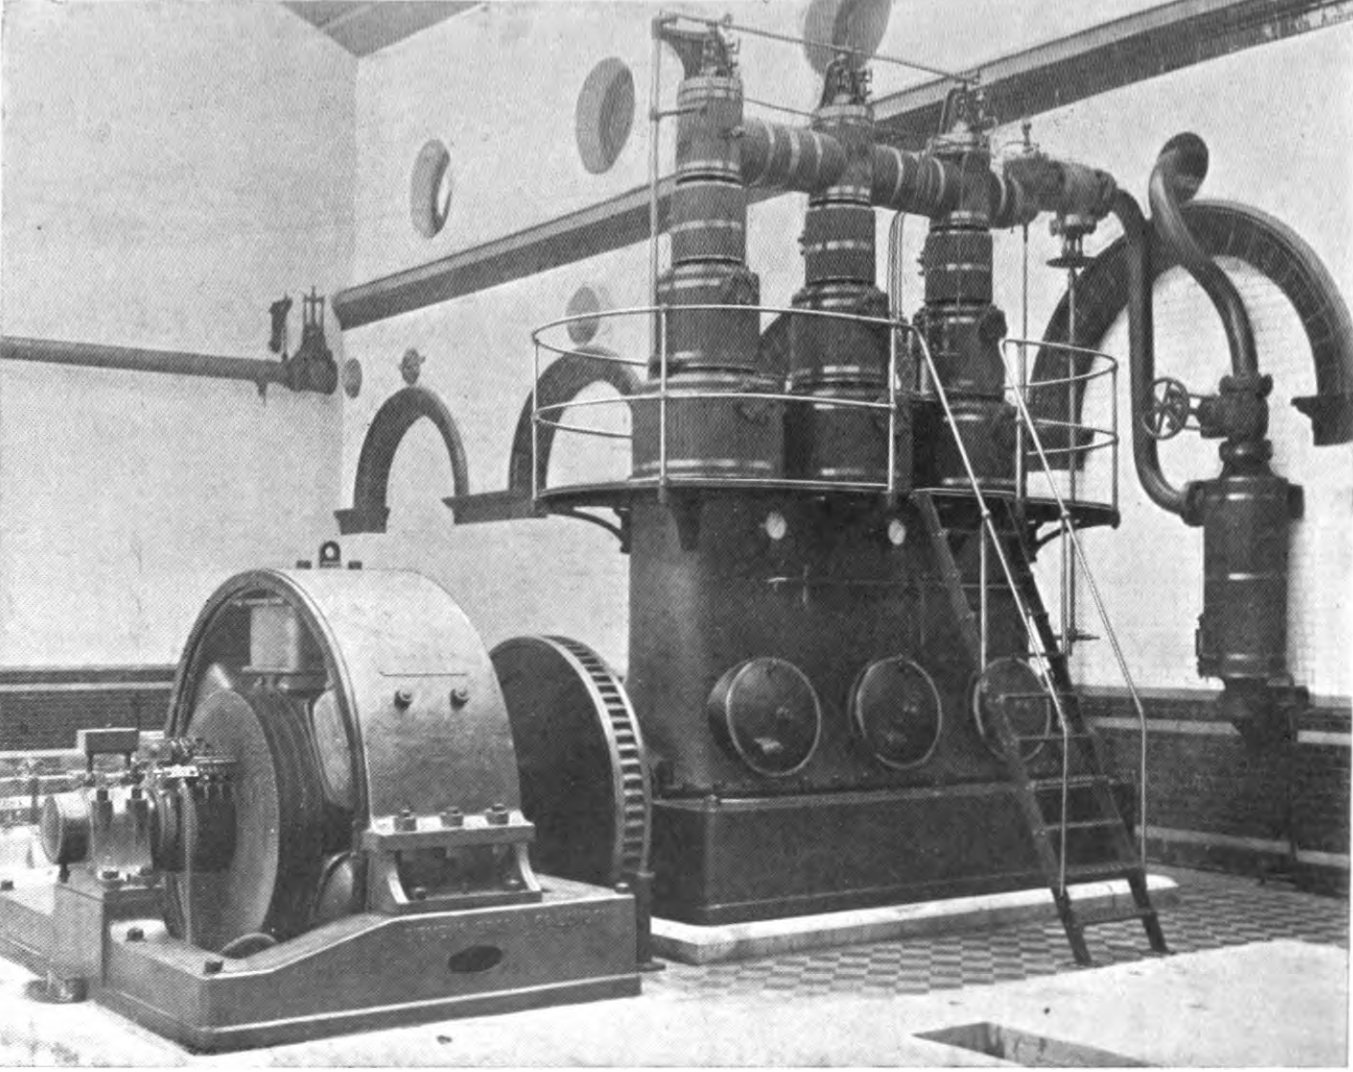 Высокоскоростной паровой двигатель (производства британской фирмы Willans), приводящий в движение динамо-машину (серебряный цилиндр слева). Из книги W. Norris and Ben. H. Morgan, High Speed Steam Engines, 2nd edition (London: P.S. King & Son, 1902), 13.